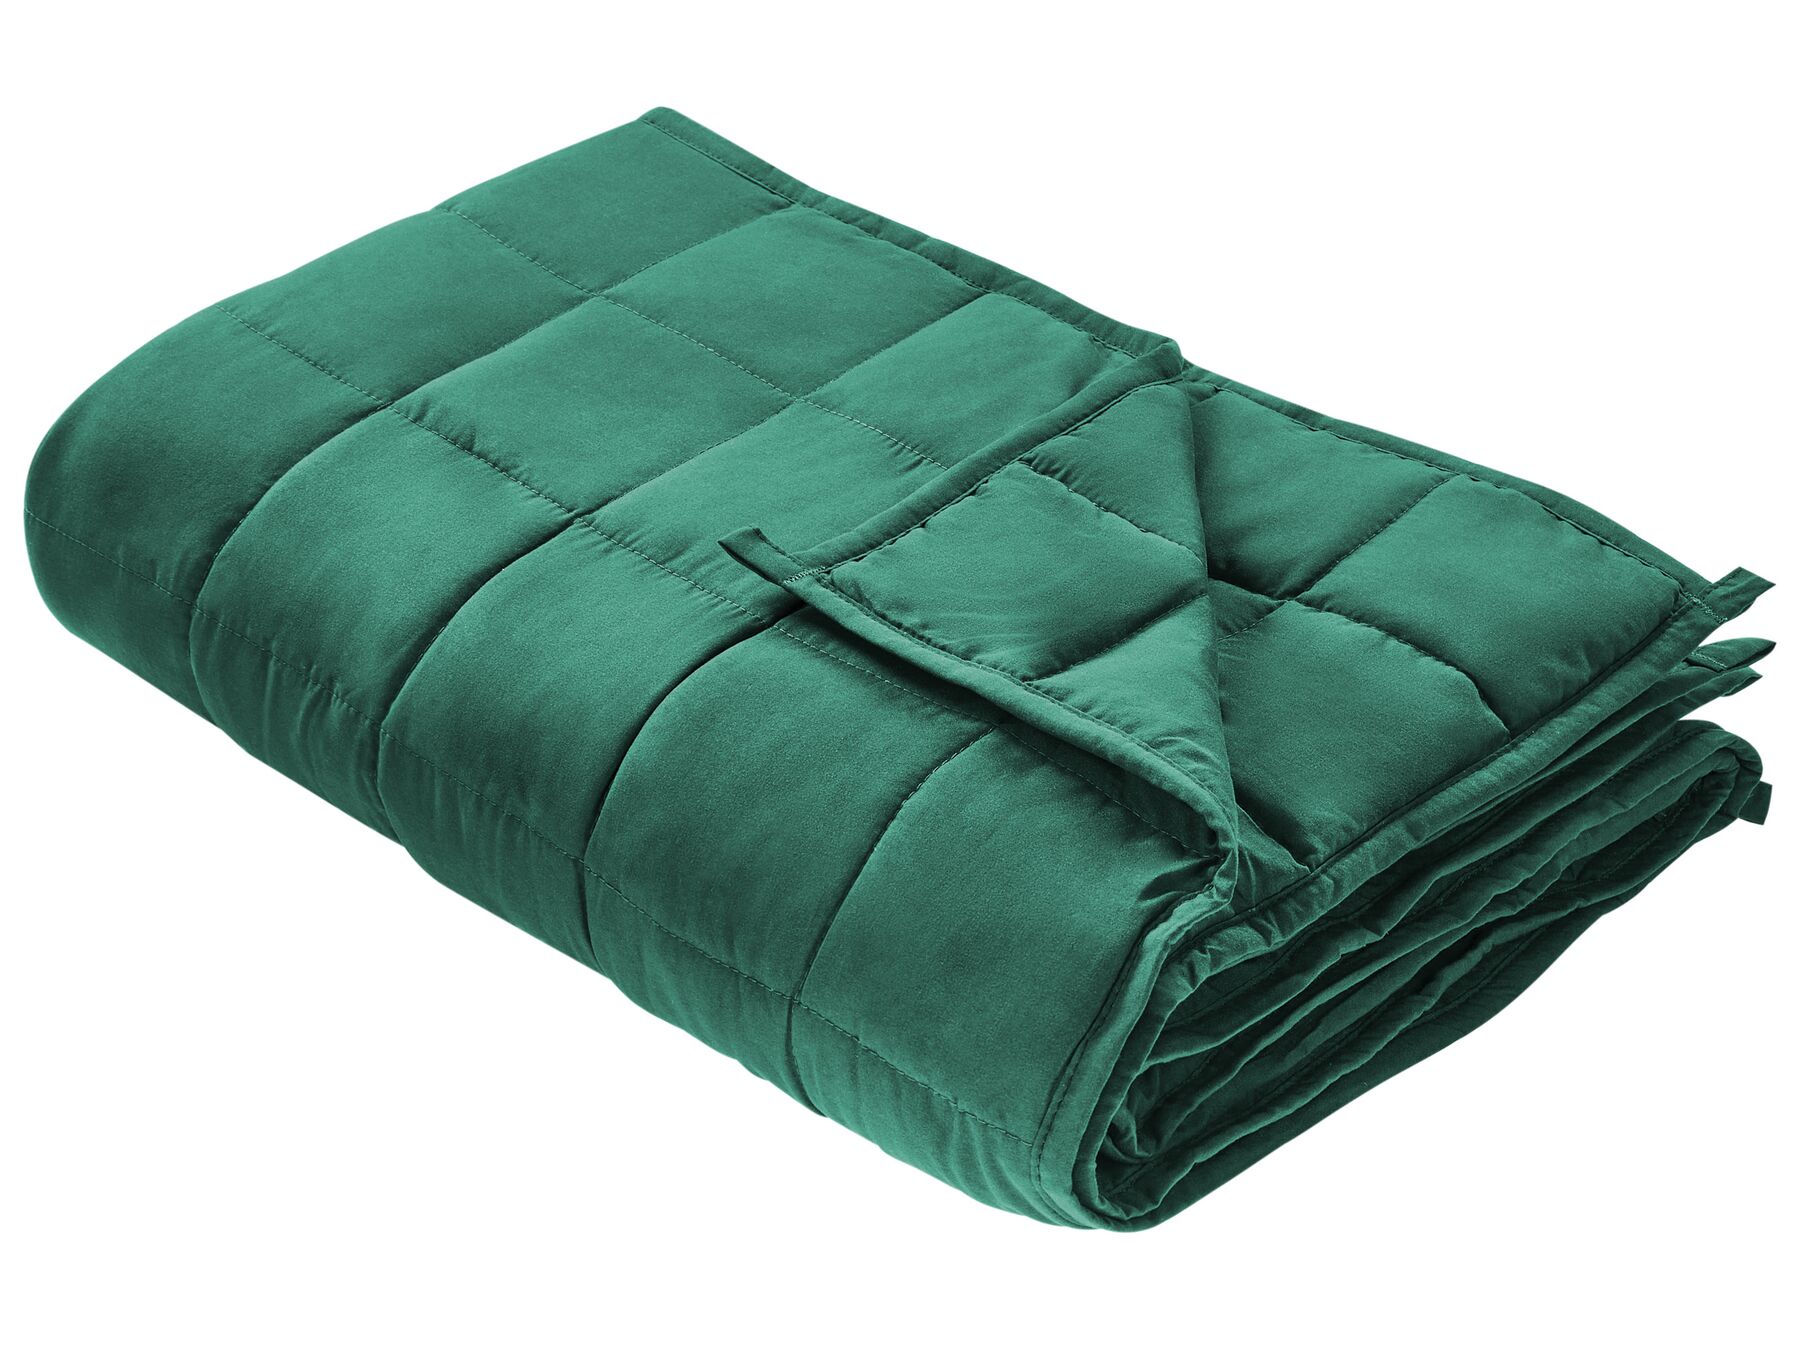 Smaragdzöld súlyozott takaró 120 x 180 cm 7 kg NEREID_891443